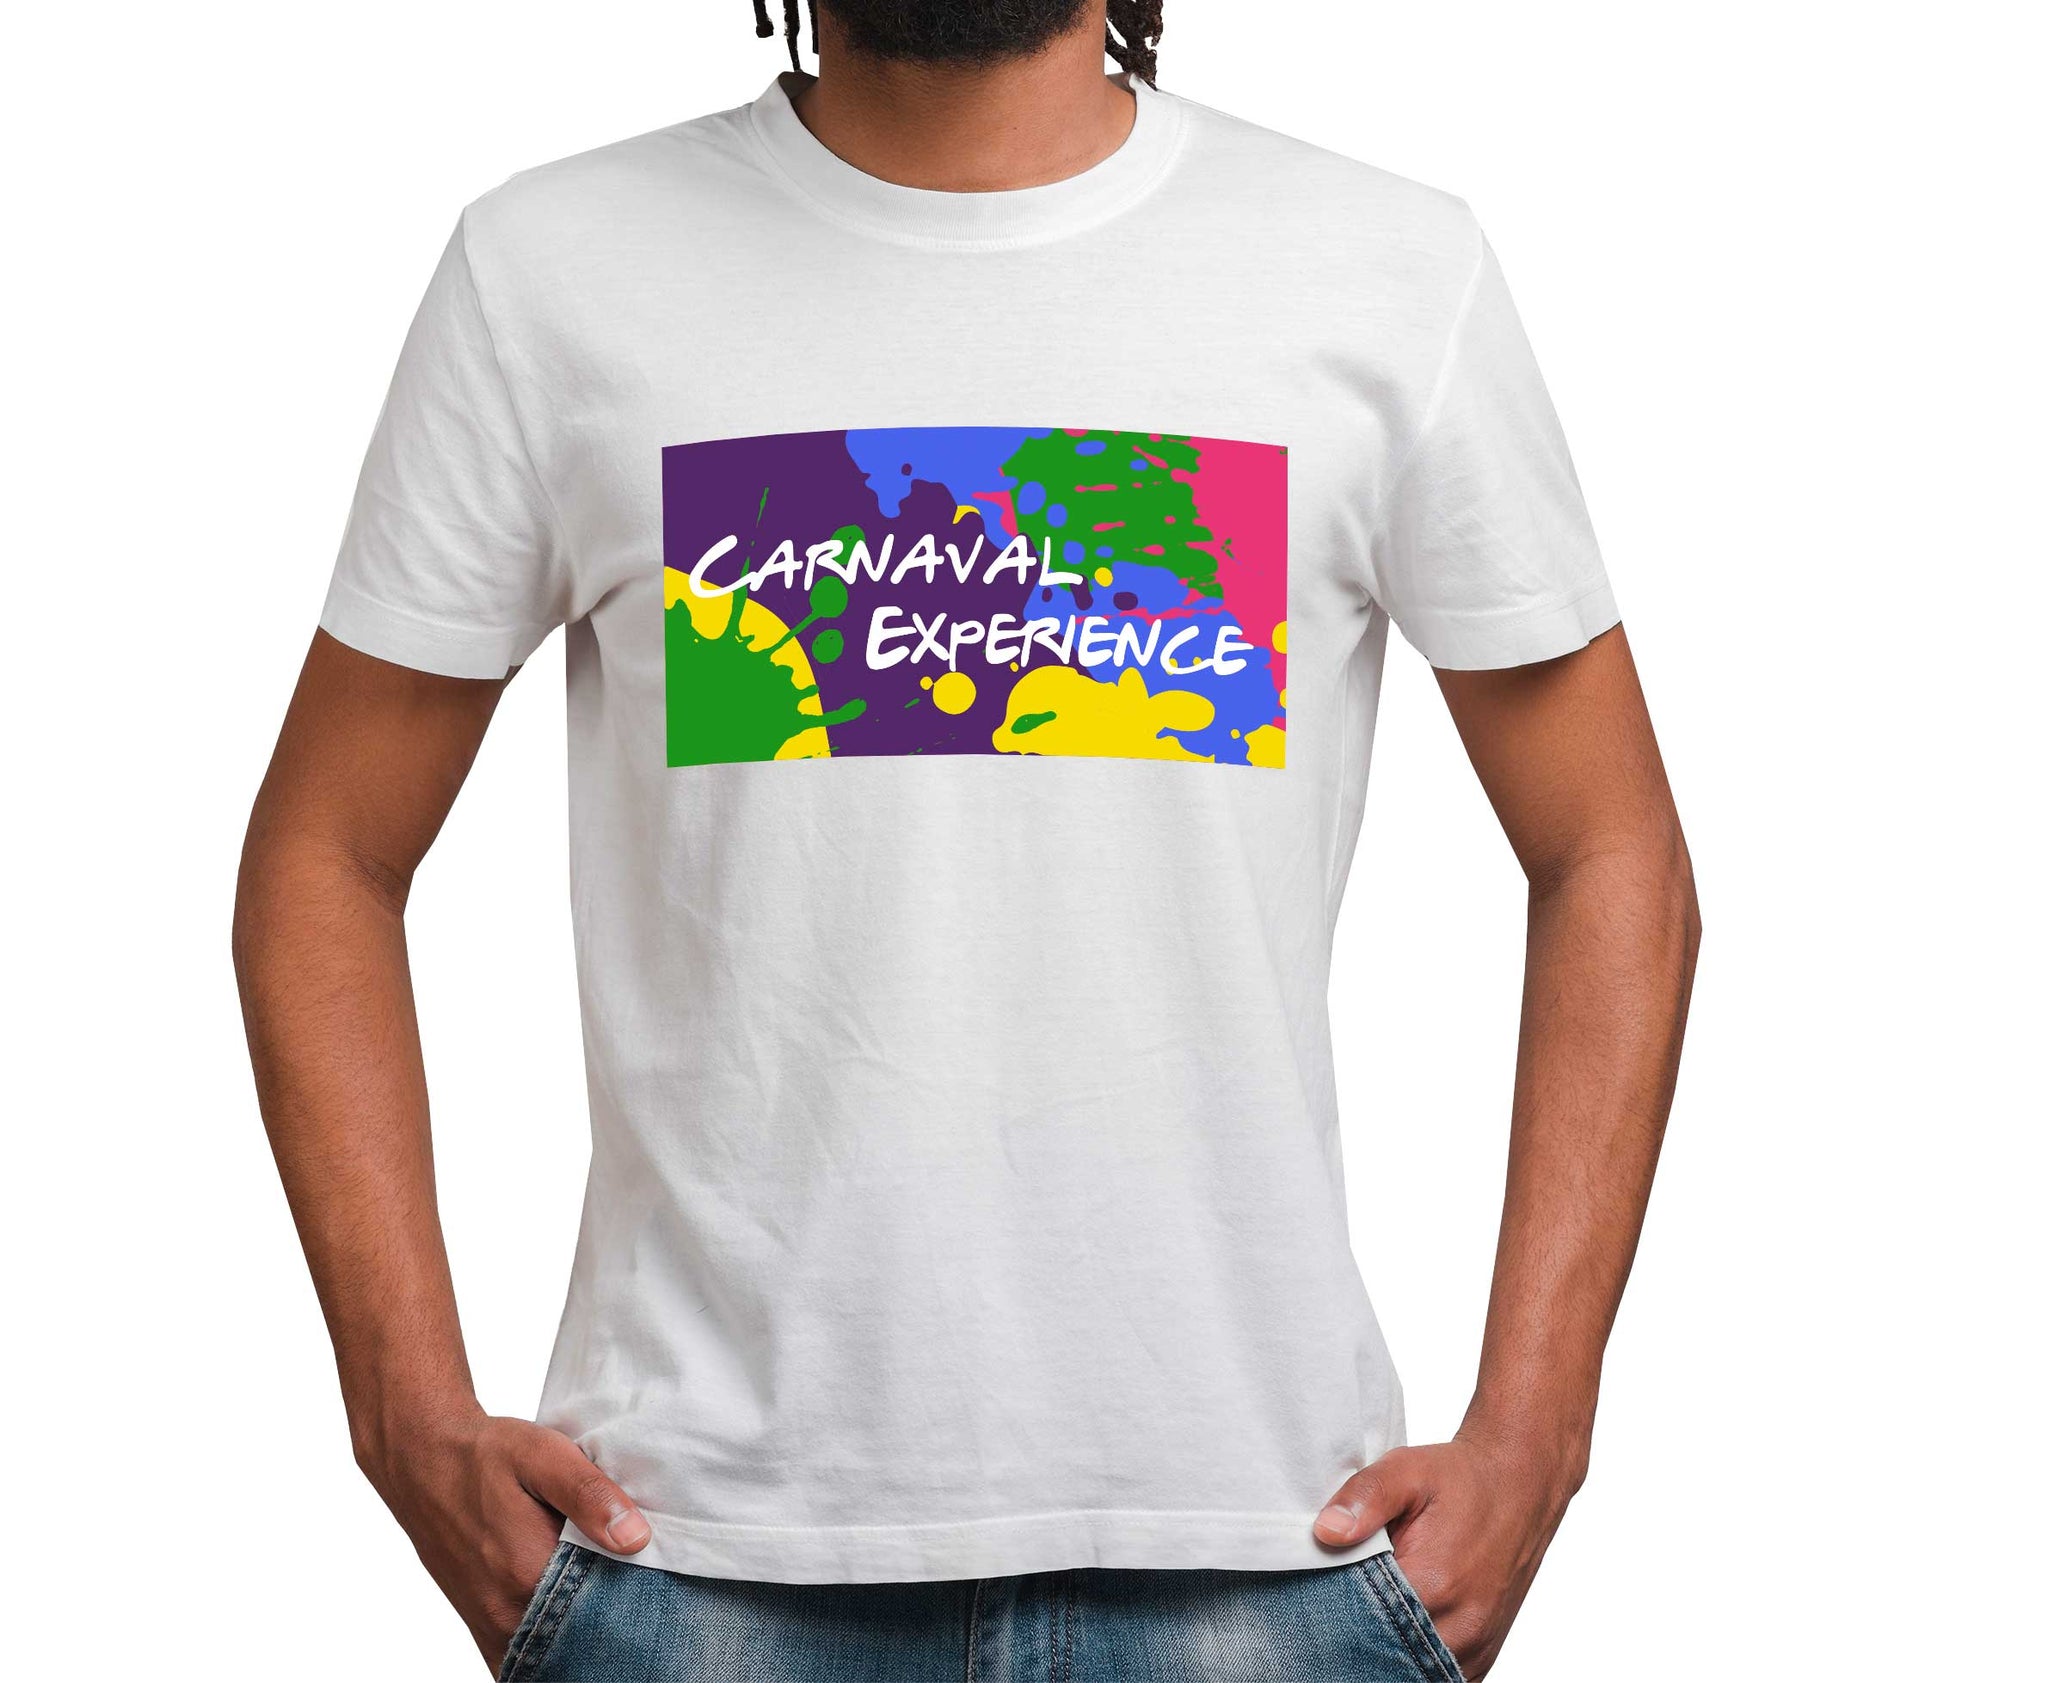 Carnaval Experience splash white shirt